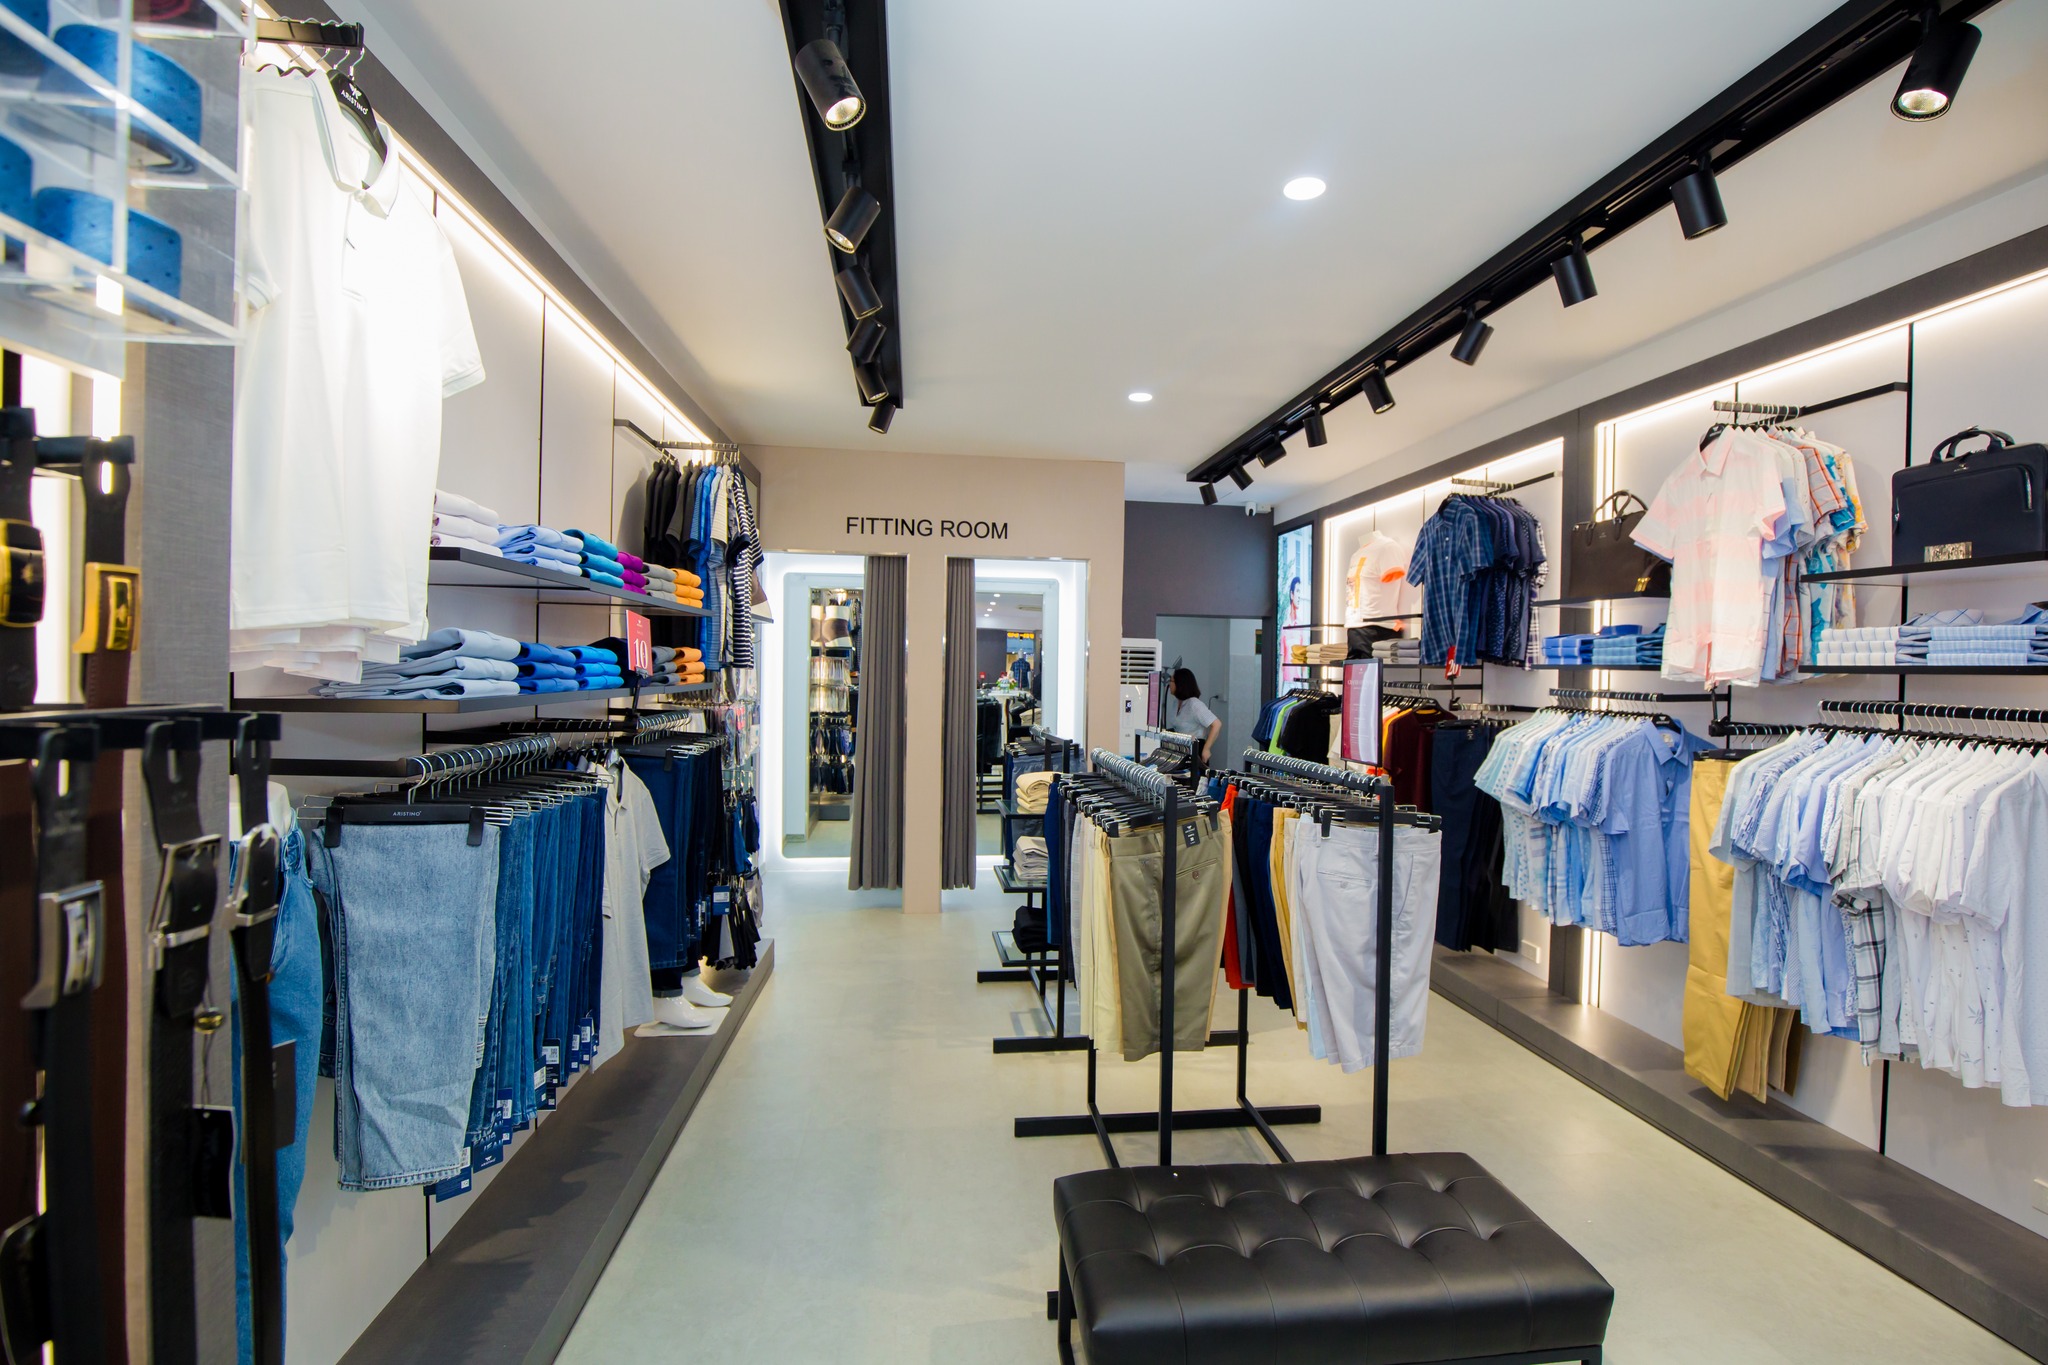 Top 10 shop quần áo nam được lựa chọn nhiều nhất ở Hà Nội -  Aristino